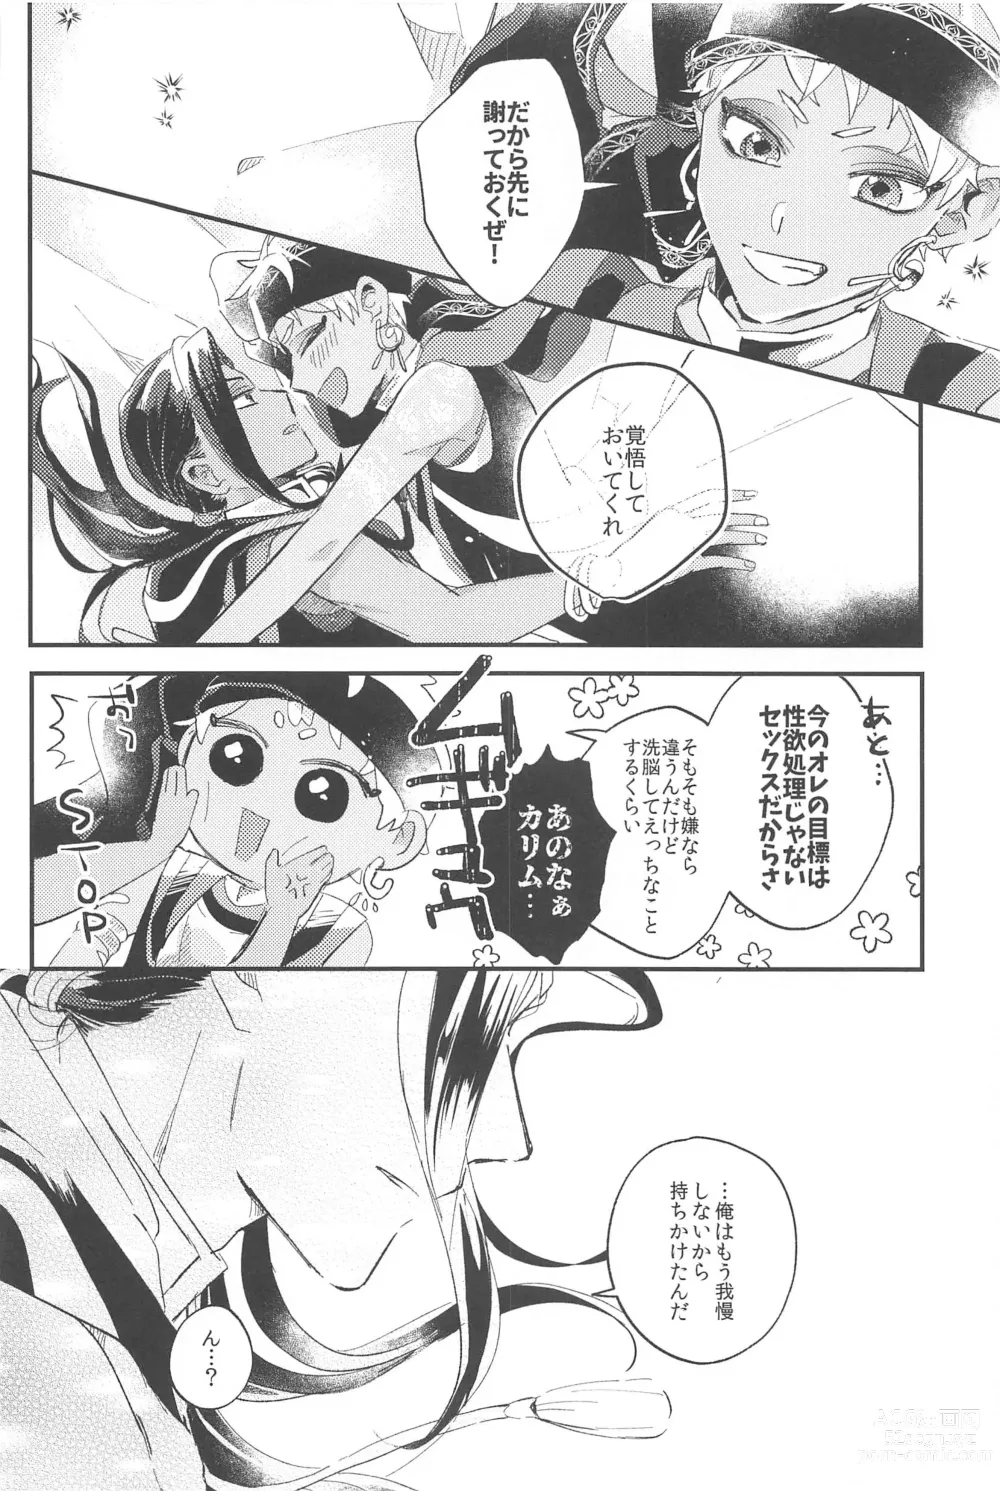 Page 42 of doujinshi Kantan dakara Muzukashii